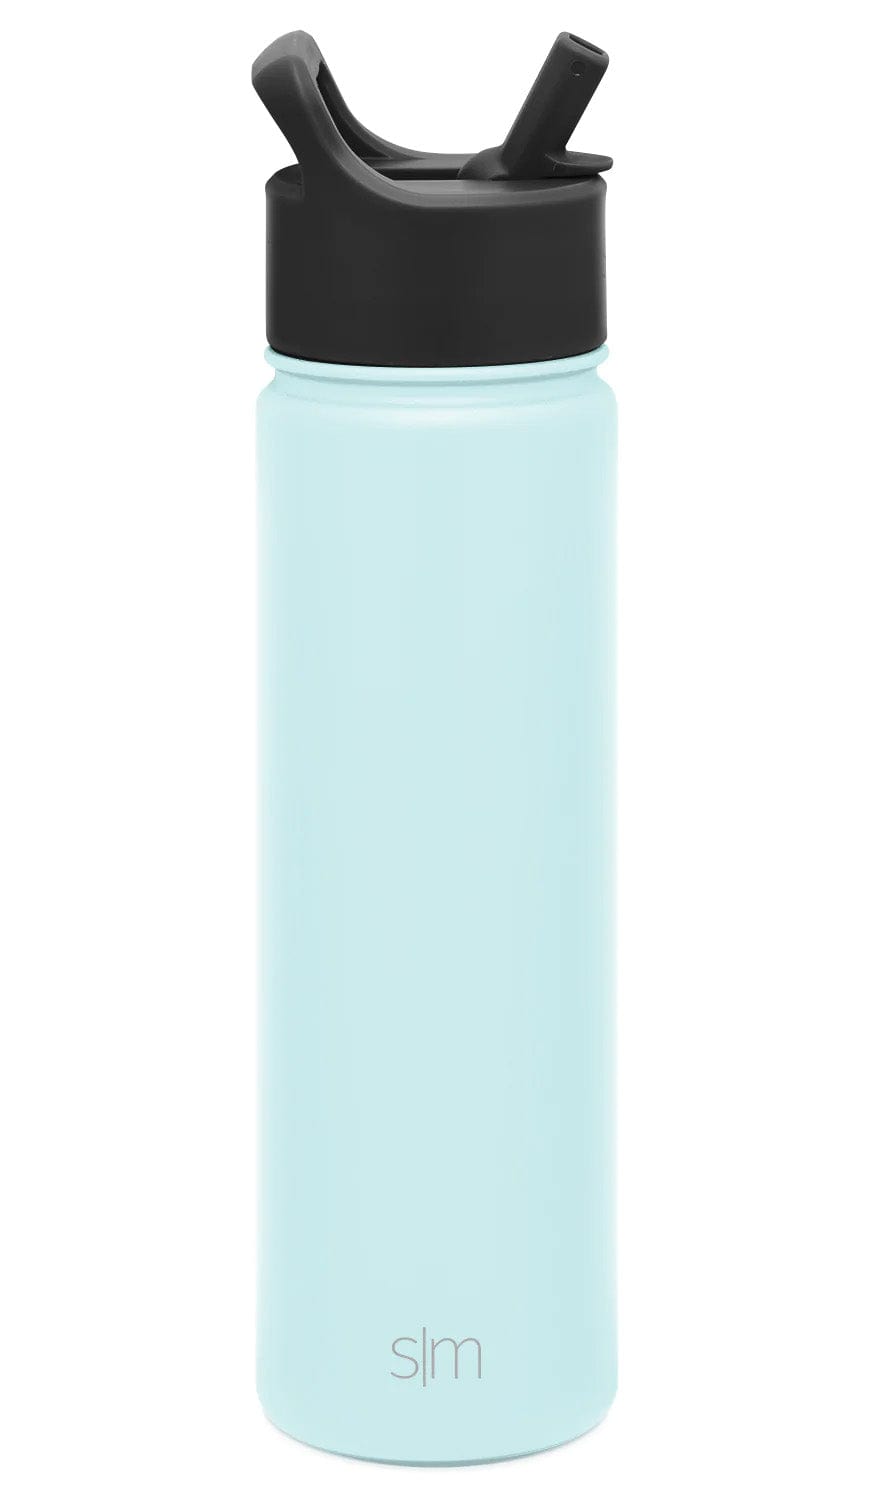 Seaside Custom Summit Water Bottle With Straw Lid - 22oz